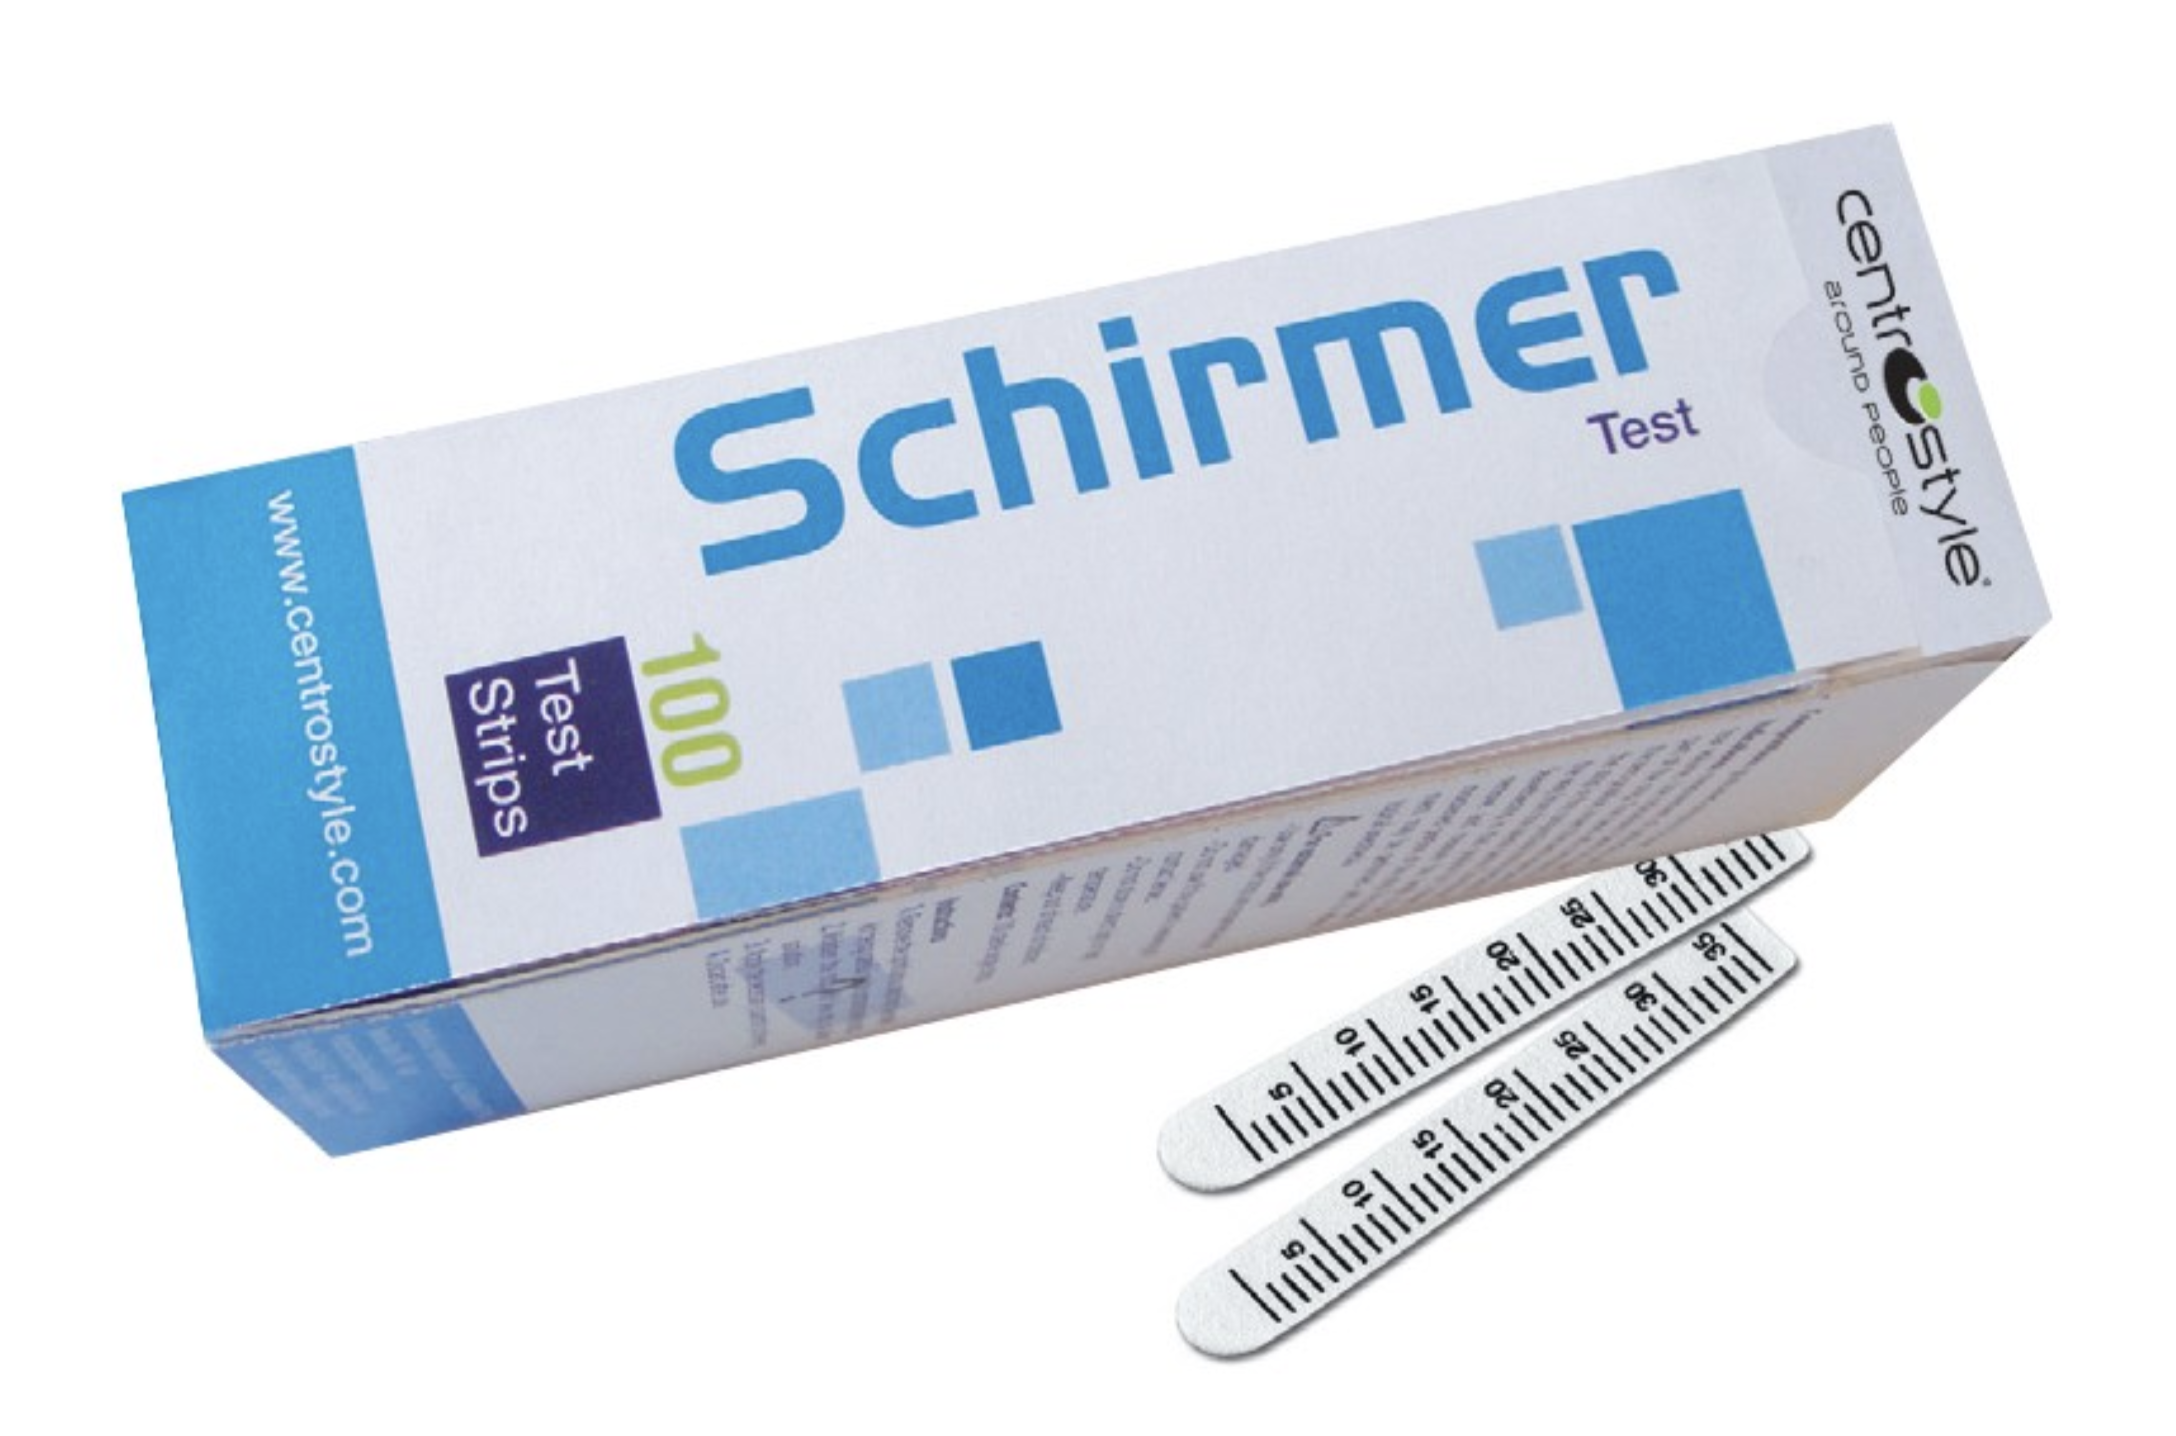 Schirmer Tear Test Strips - Centrostyle  *INDENT*